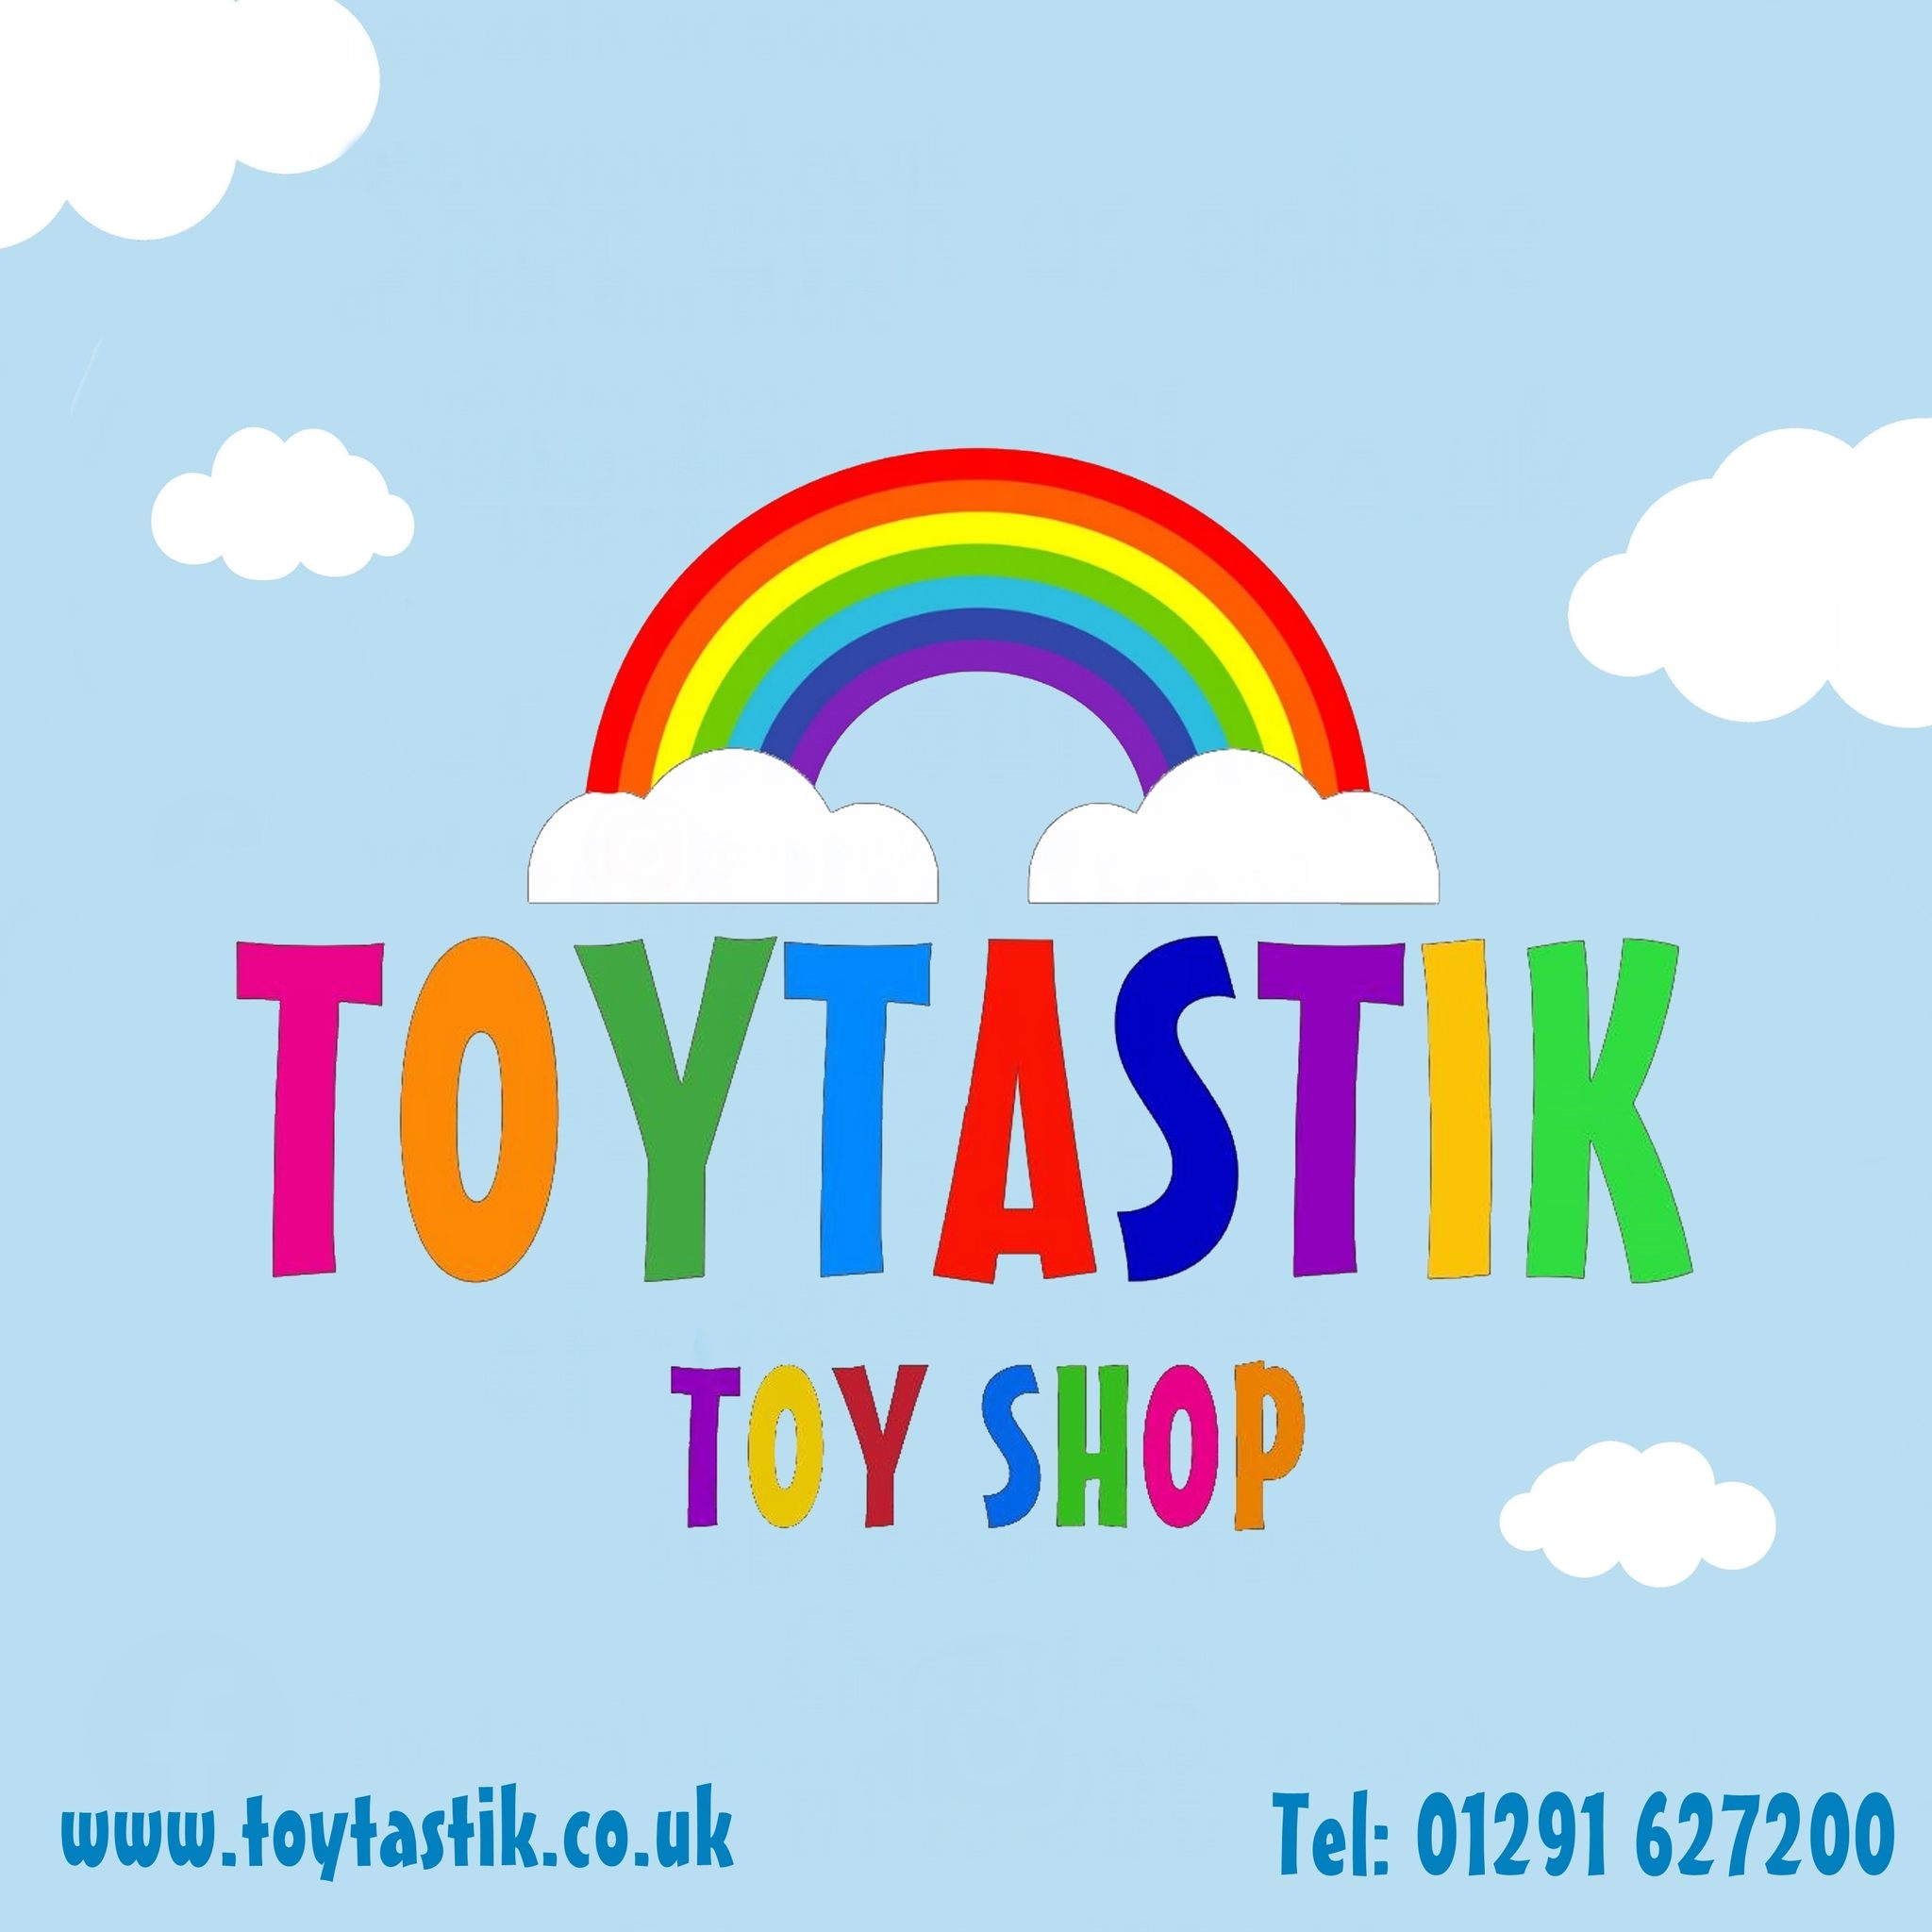 Toytastik Toy Shop, Telephone Number 01291 627200, website address www.toytastik.co.uk